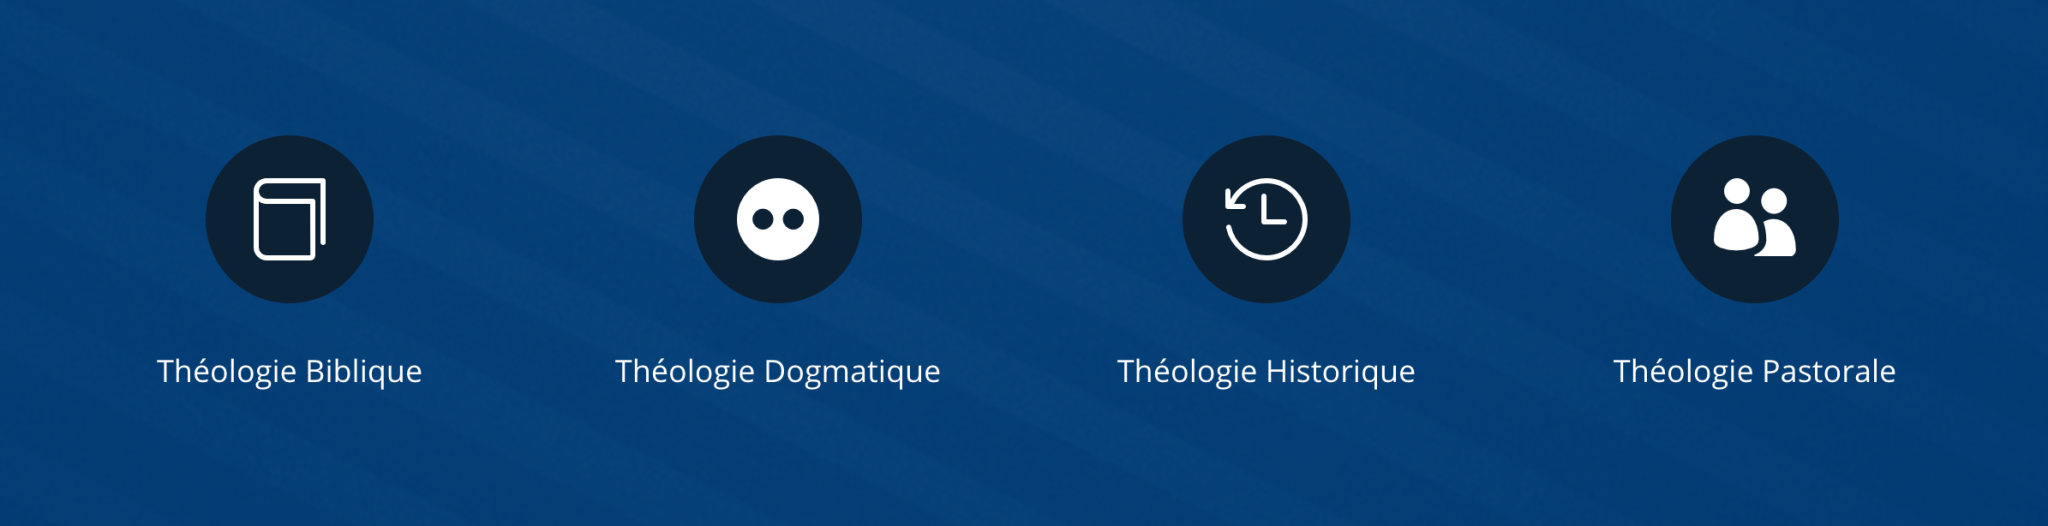 Quatre catégories de la théologie: théologie biblique, théologie dogmatique, théologie historique et théologie pastorale.